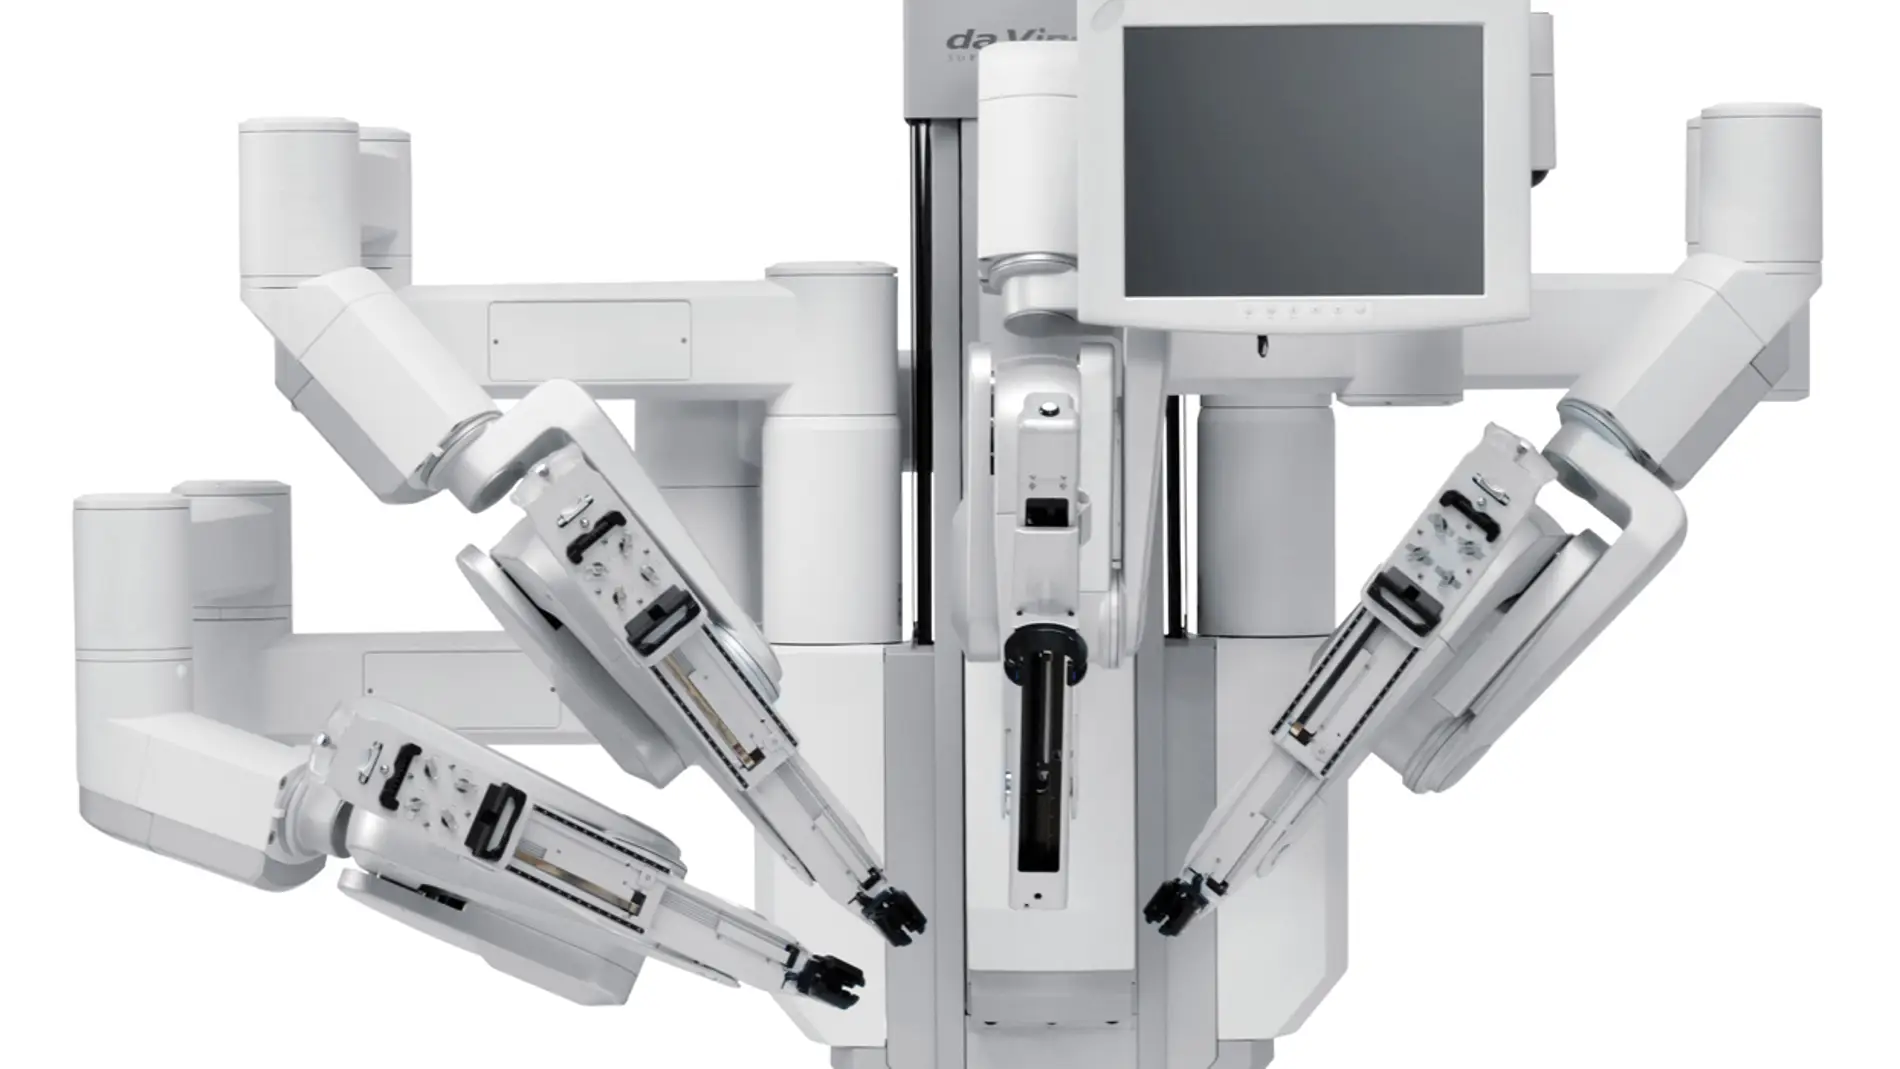 Robot da Vinci, usado en cirugía